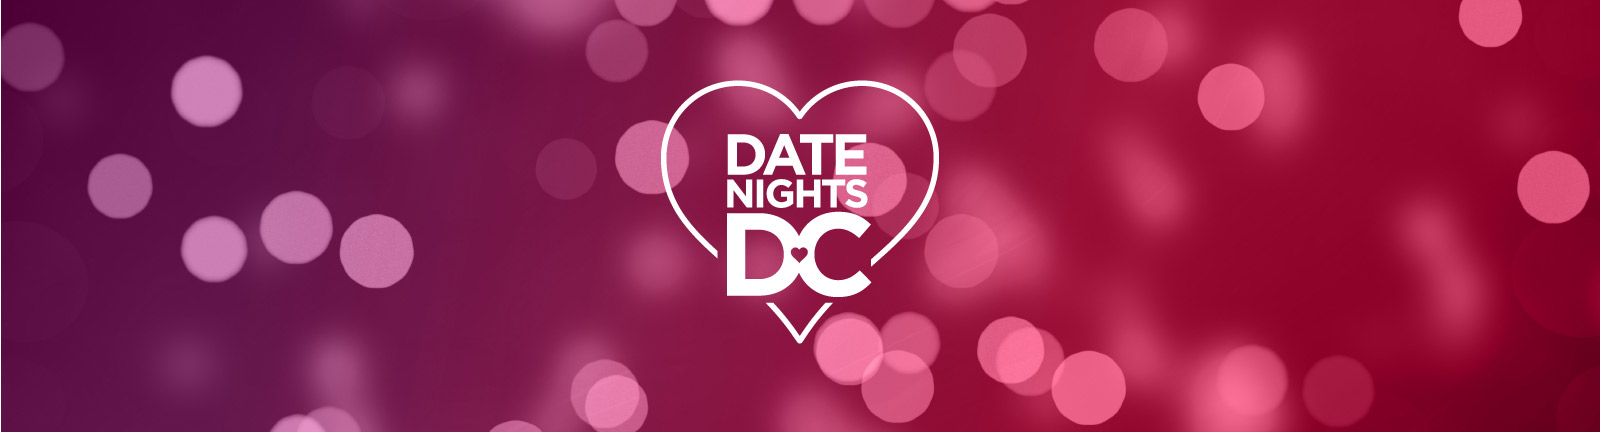 Date Nights DC - Ihr ultimativer Reiseführer für Romantik in Washington, DC